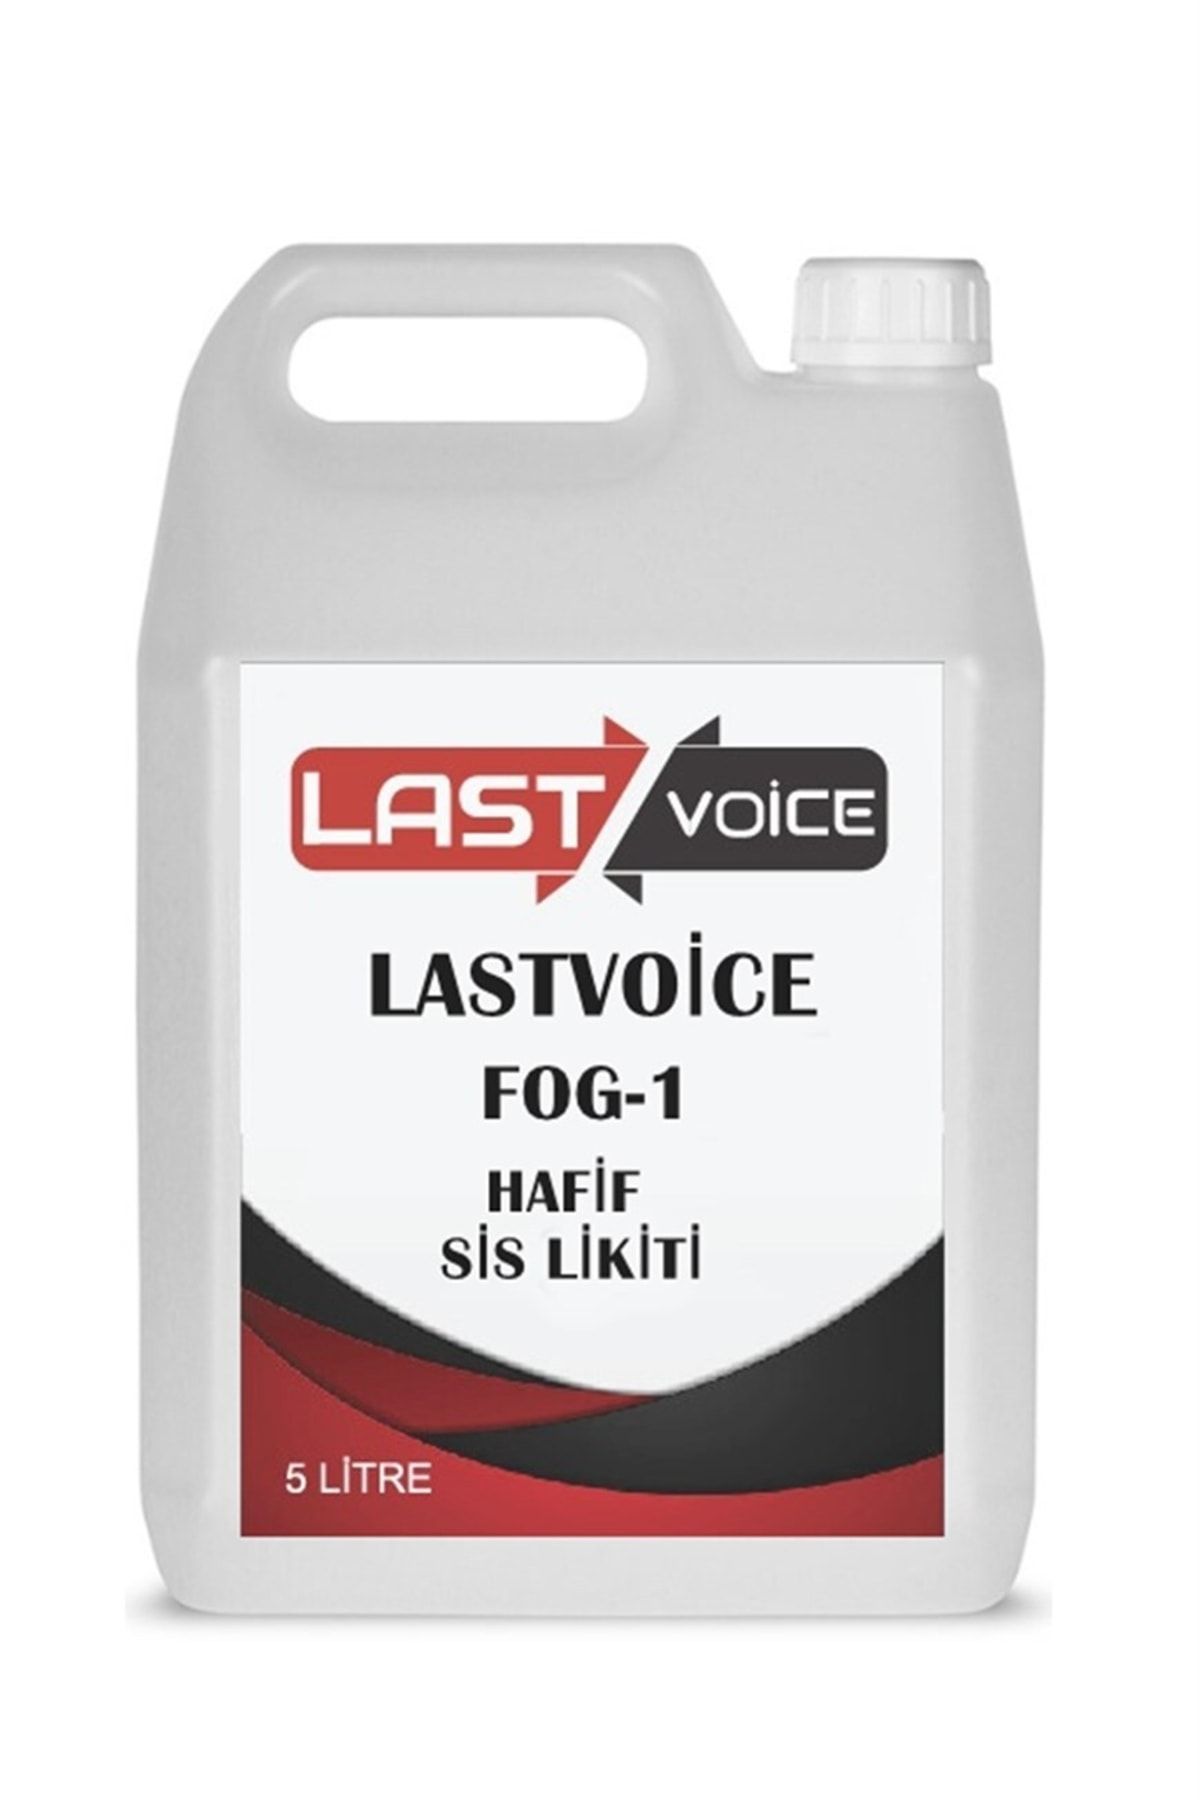 Lastvoice Fog-1 Sis Makinesi Likiti Sıvısı 5 Litre Hafif